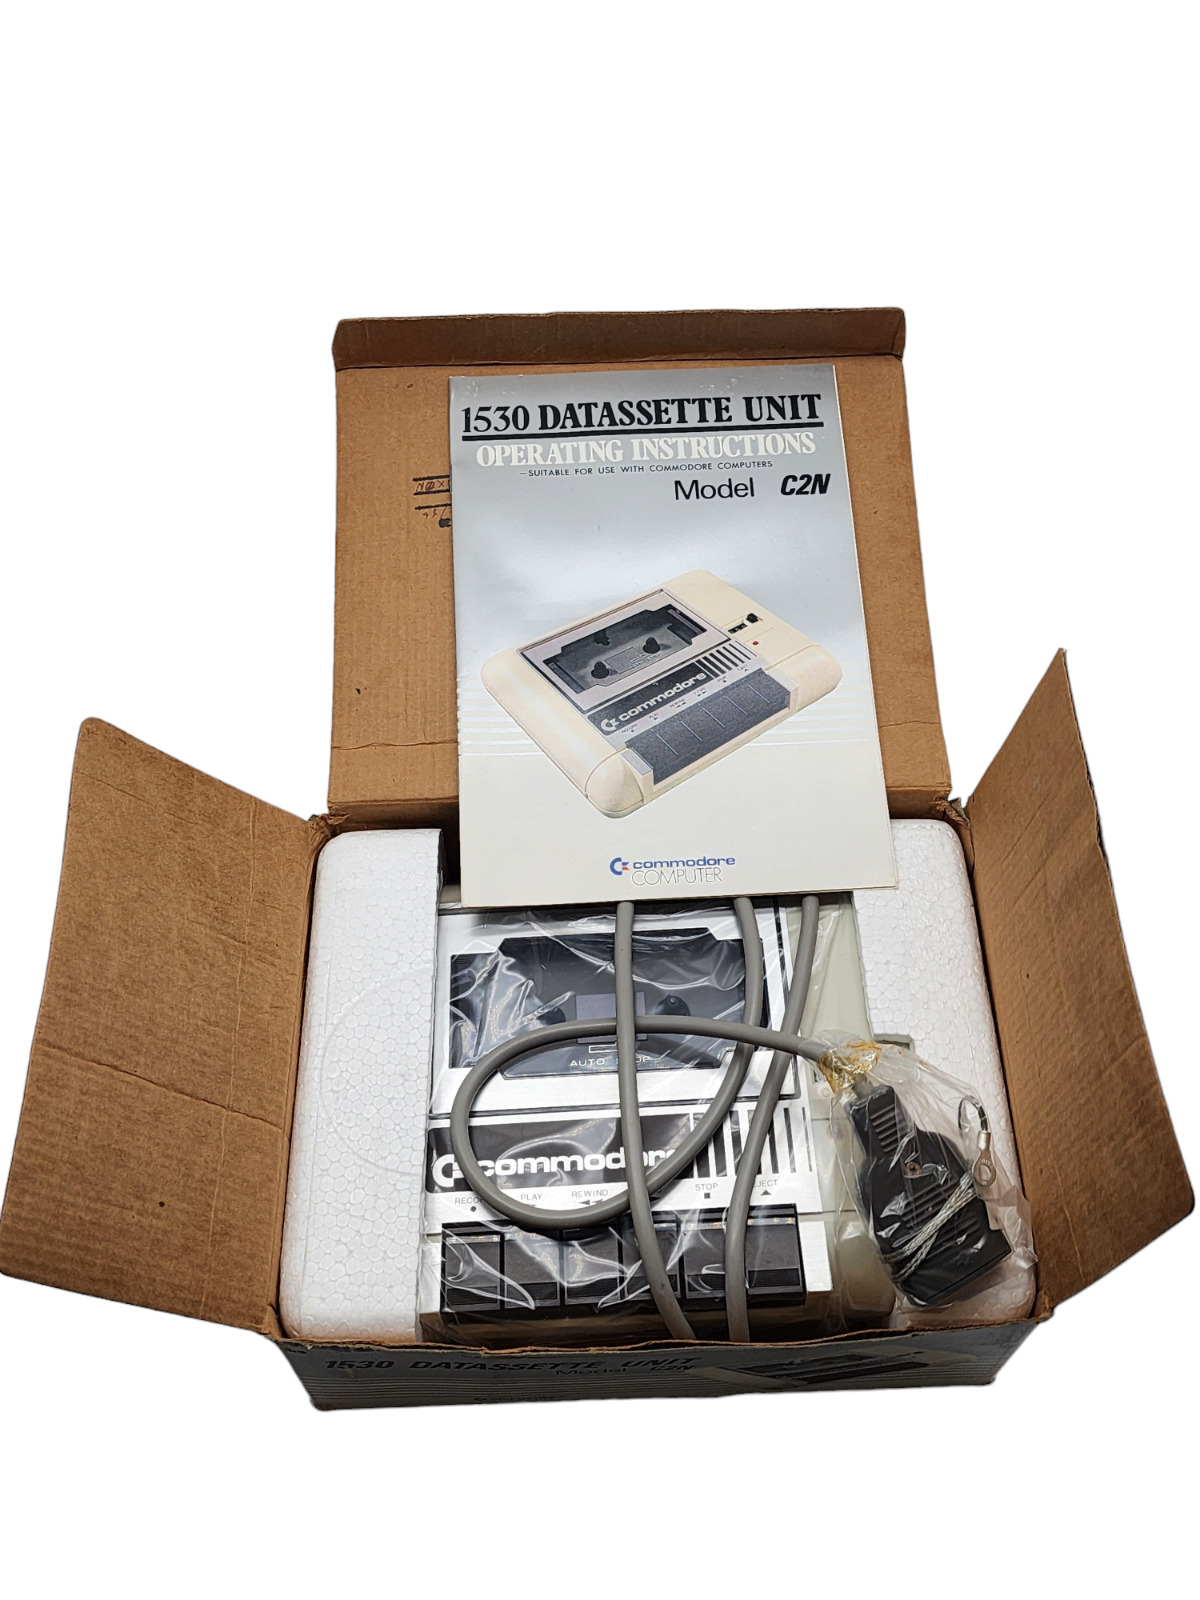 Commodore Computer C2N Datasette Unit Model 1530 Cassette Unused Original Pack